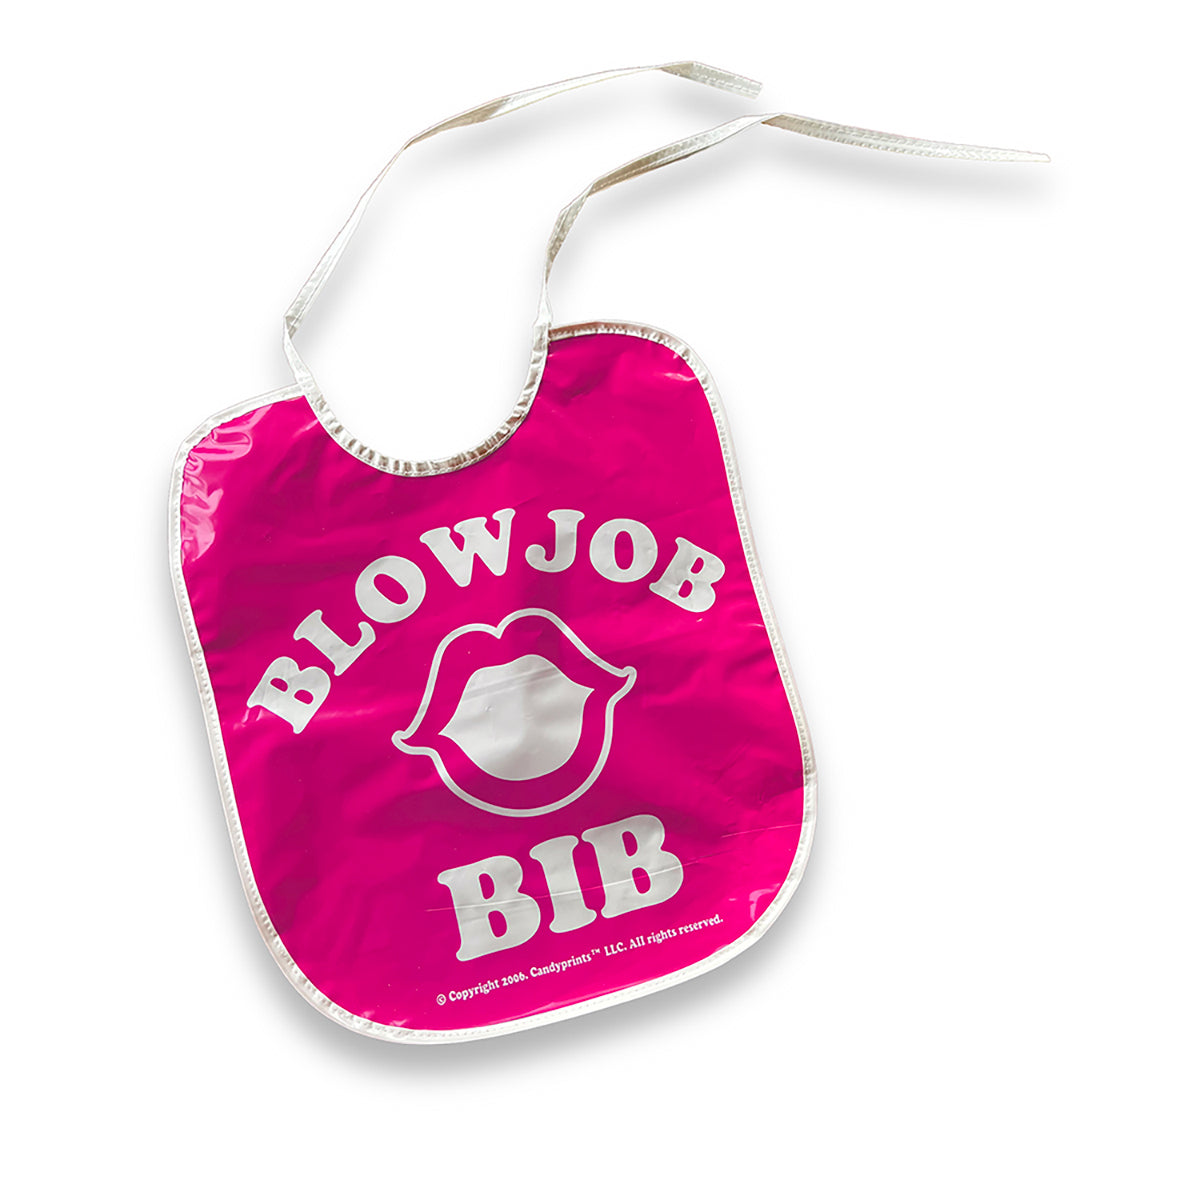 Blow Job Bib Pink